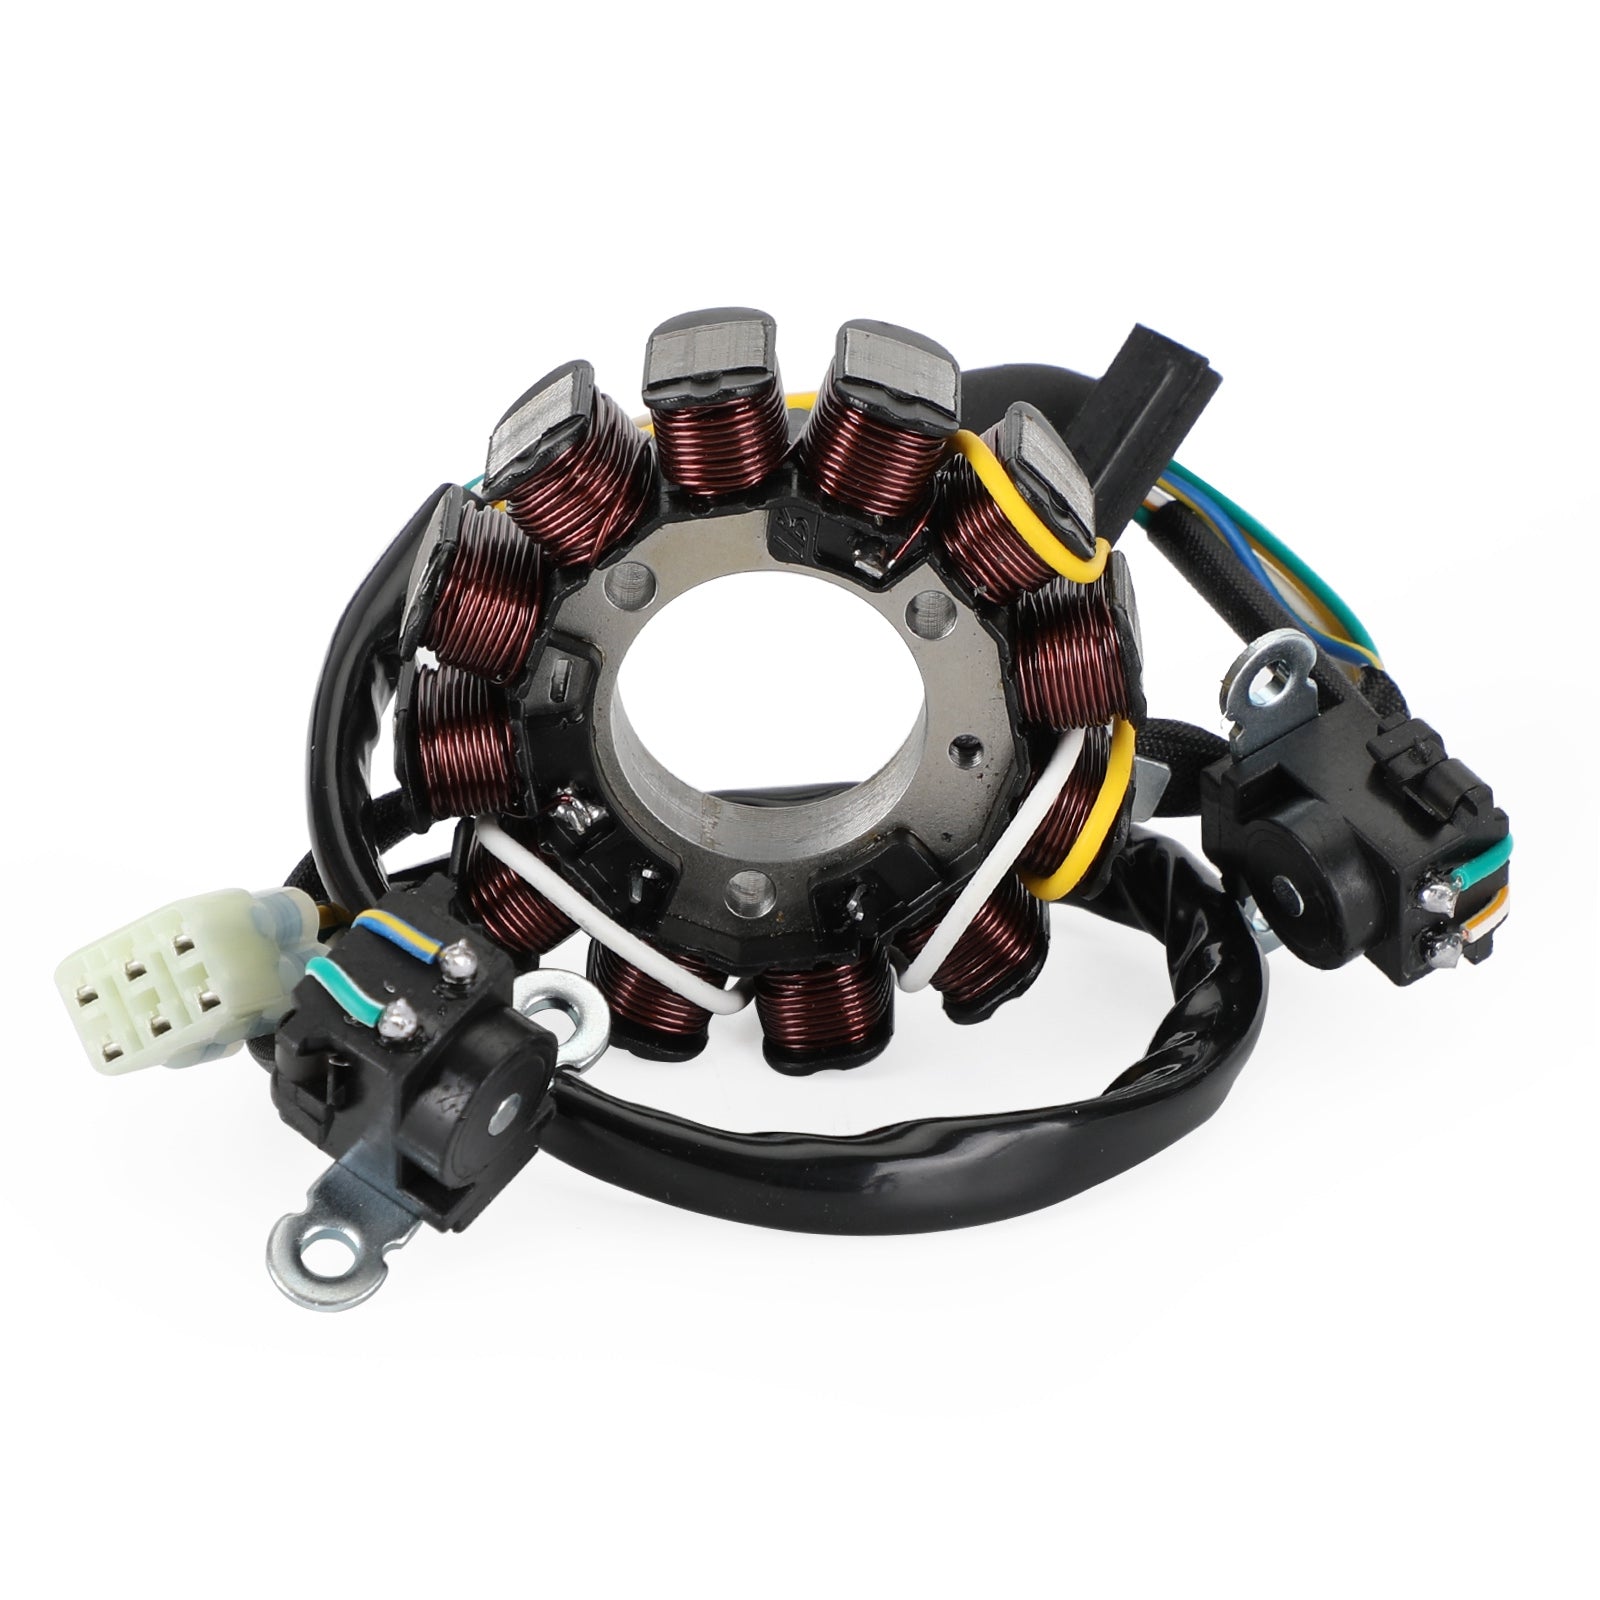 Magneto Coil Stator + Voltage Regulator + Gasket Assy For Honda CRF 250 R CRF250R 2014 - 2017 Generic